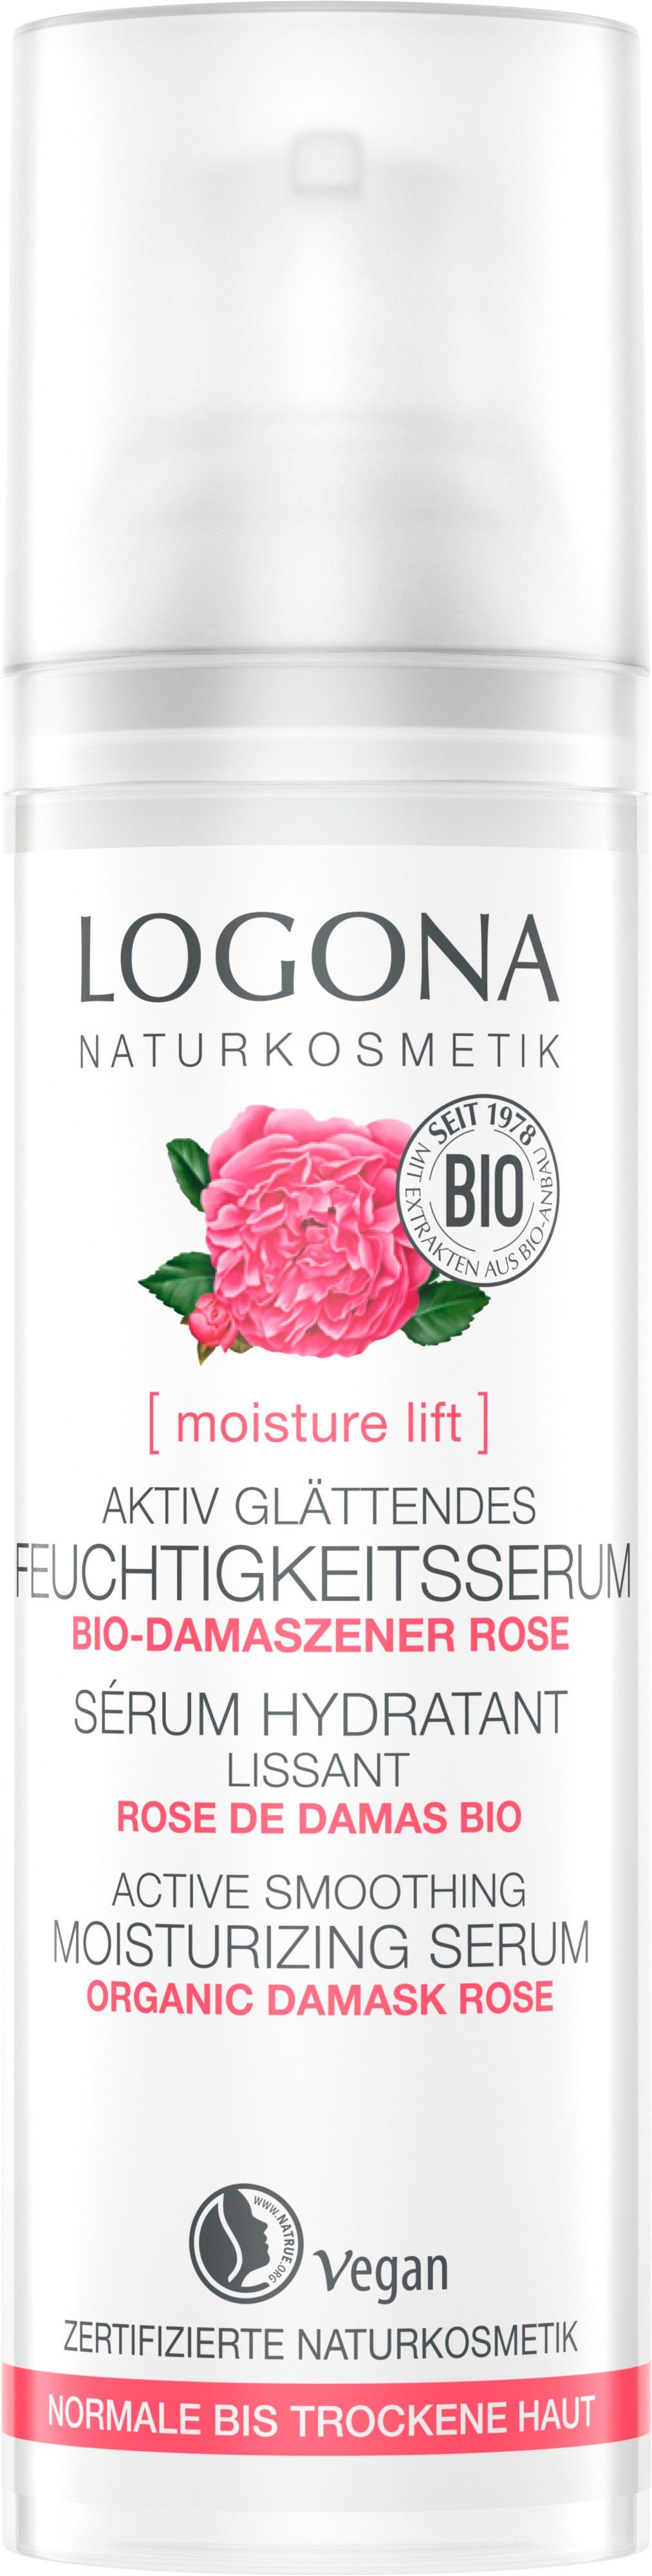 LOGONA Gesichtsserum Logona moisture lift zarten, mit Verwöhnt natürlichen einem glätt rein Feuchtigk.serum